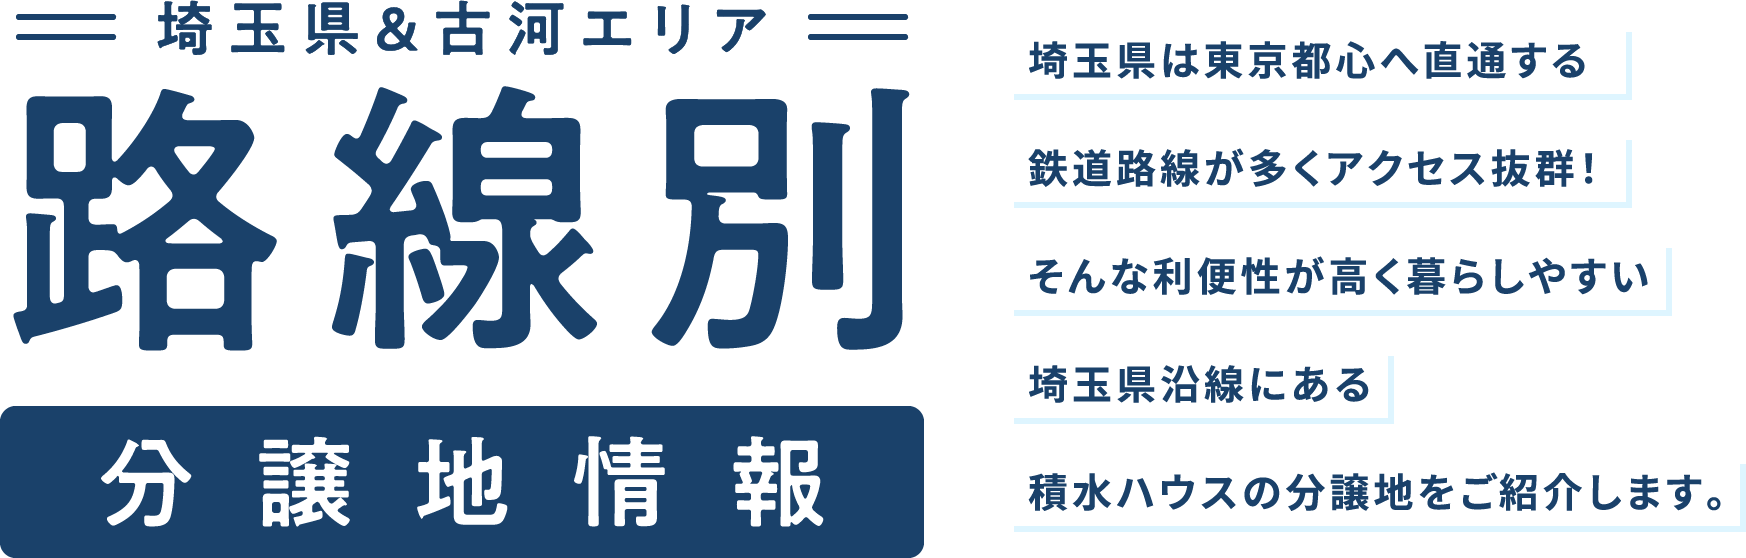 埼玉県&古河エリア路線別分譲地情報 埼玉県は東京都心へ直通する鉄道路線が多くアクセス抜群！そんな利便性が高く暮らしやすい埼玉県沿線にある積水ハウスの分譲地をご紹介します。